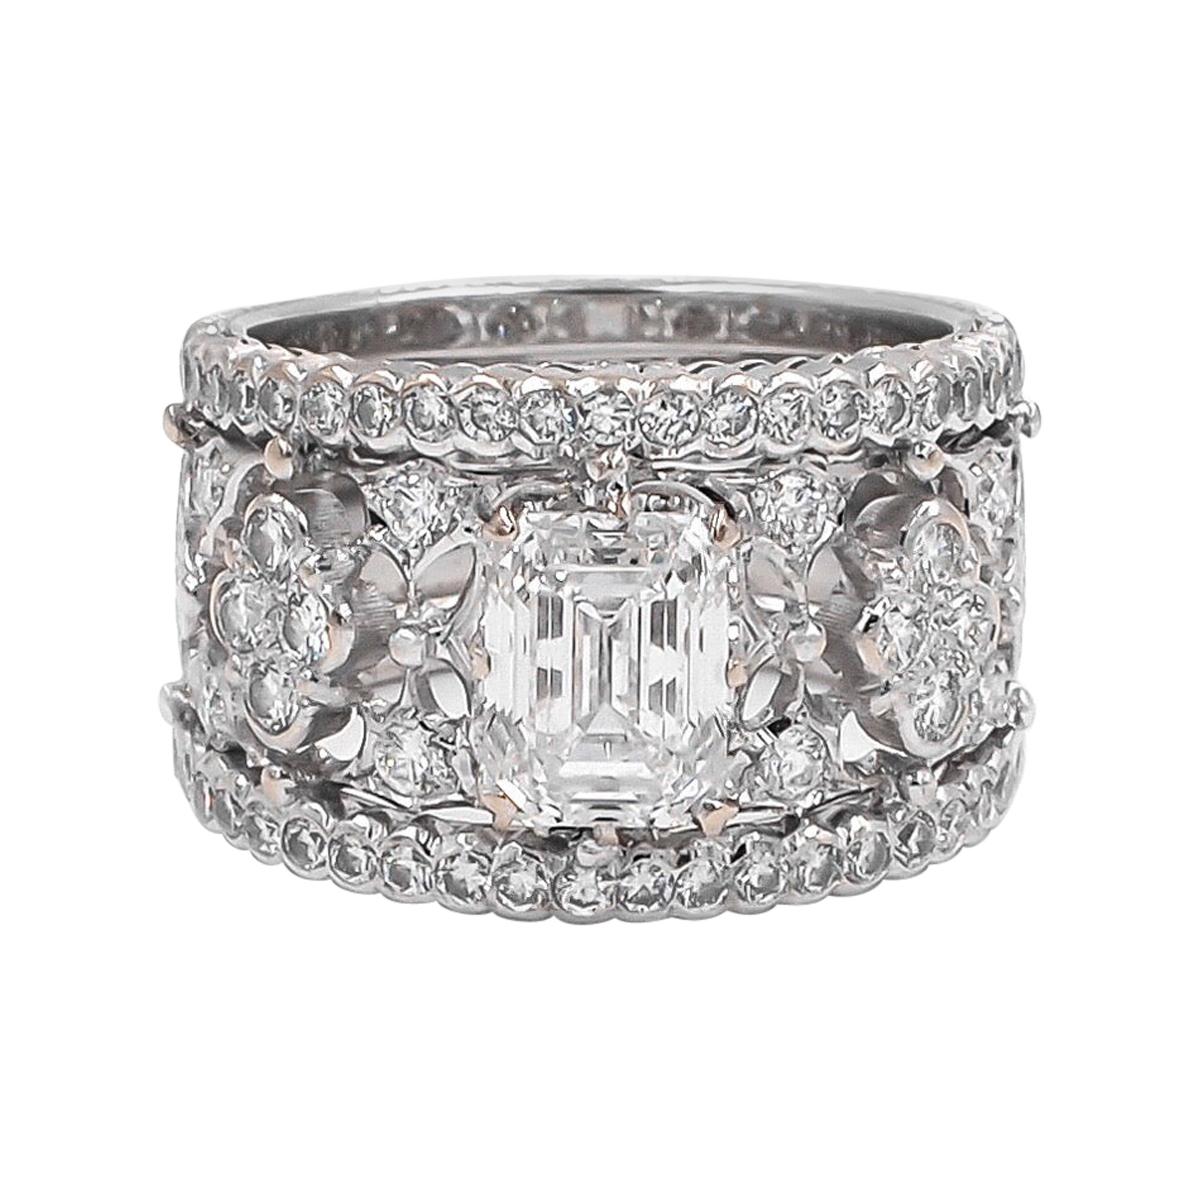 Buccellati Romanza GIA Certified Emerald Cut Diamond Ring